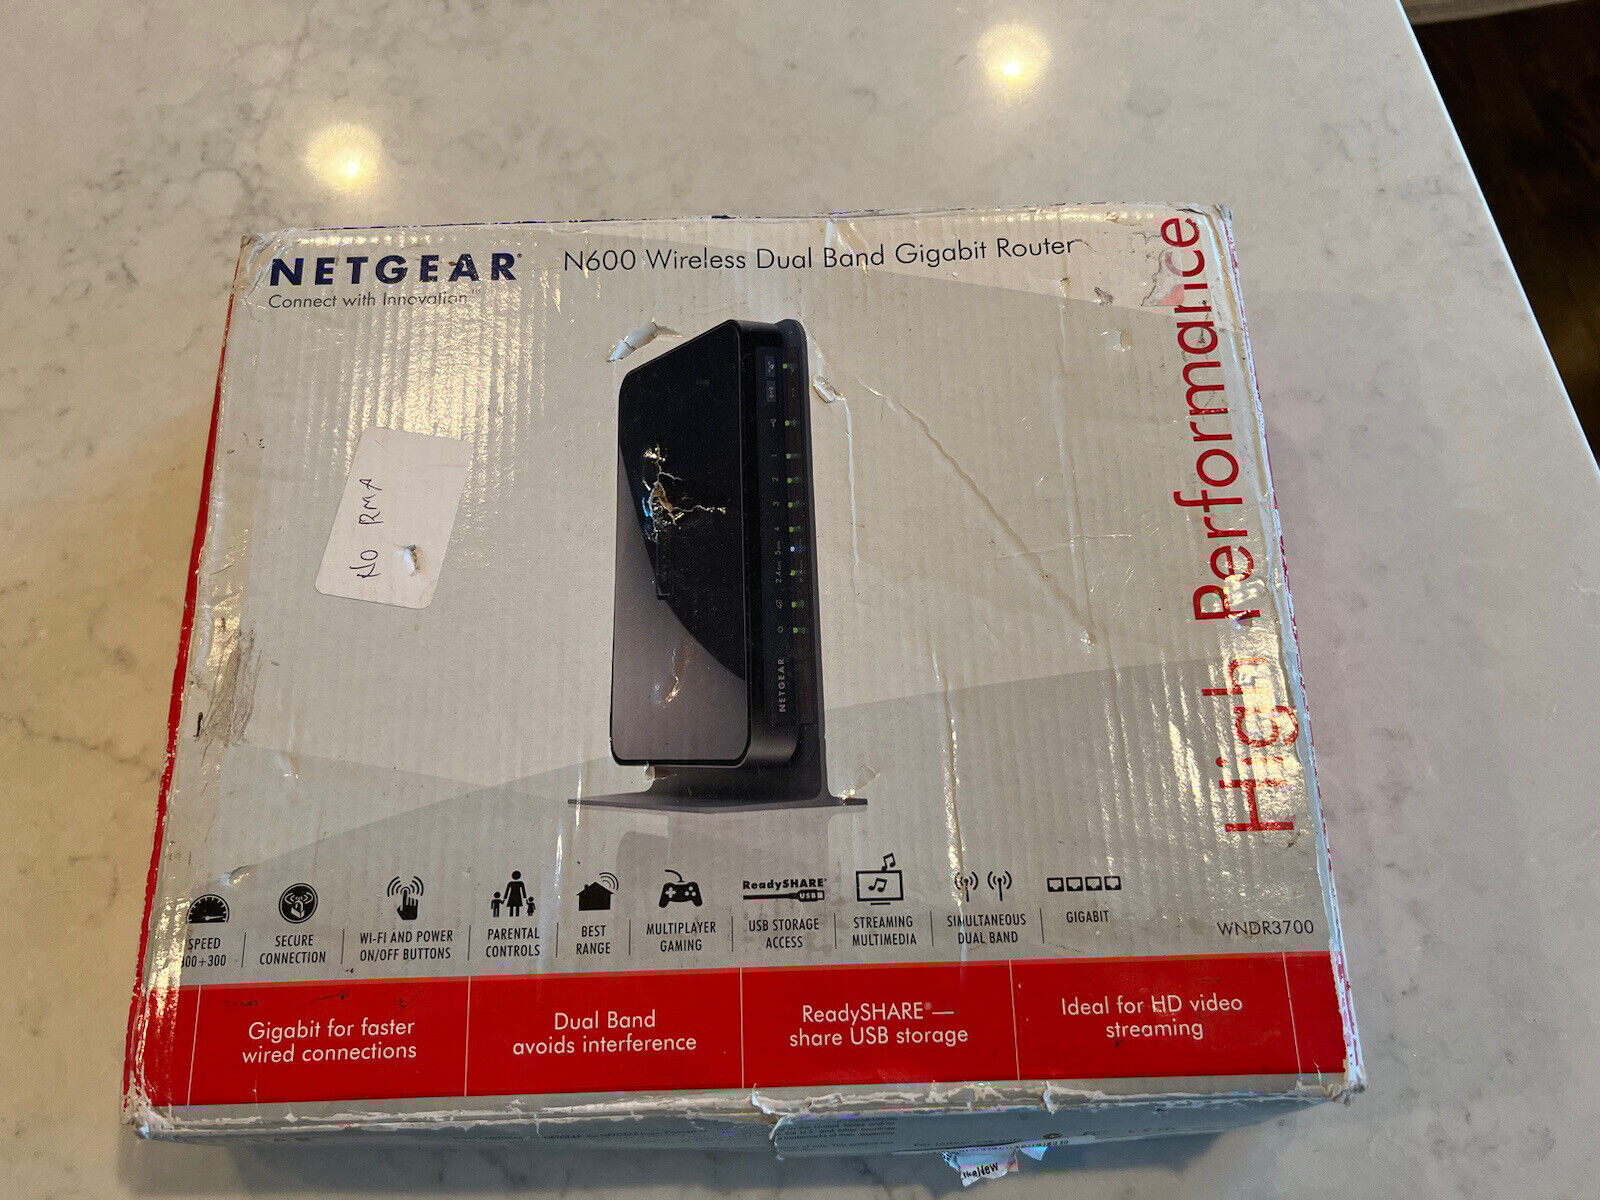 Netgear N600 300 Mbps 4-Port Gigabit Wireless N Router (WNDR3700)v3